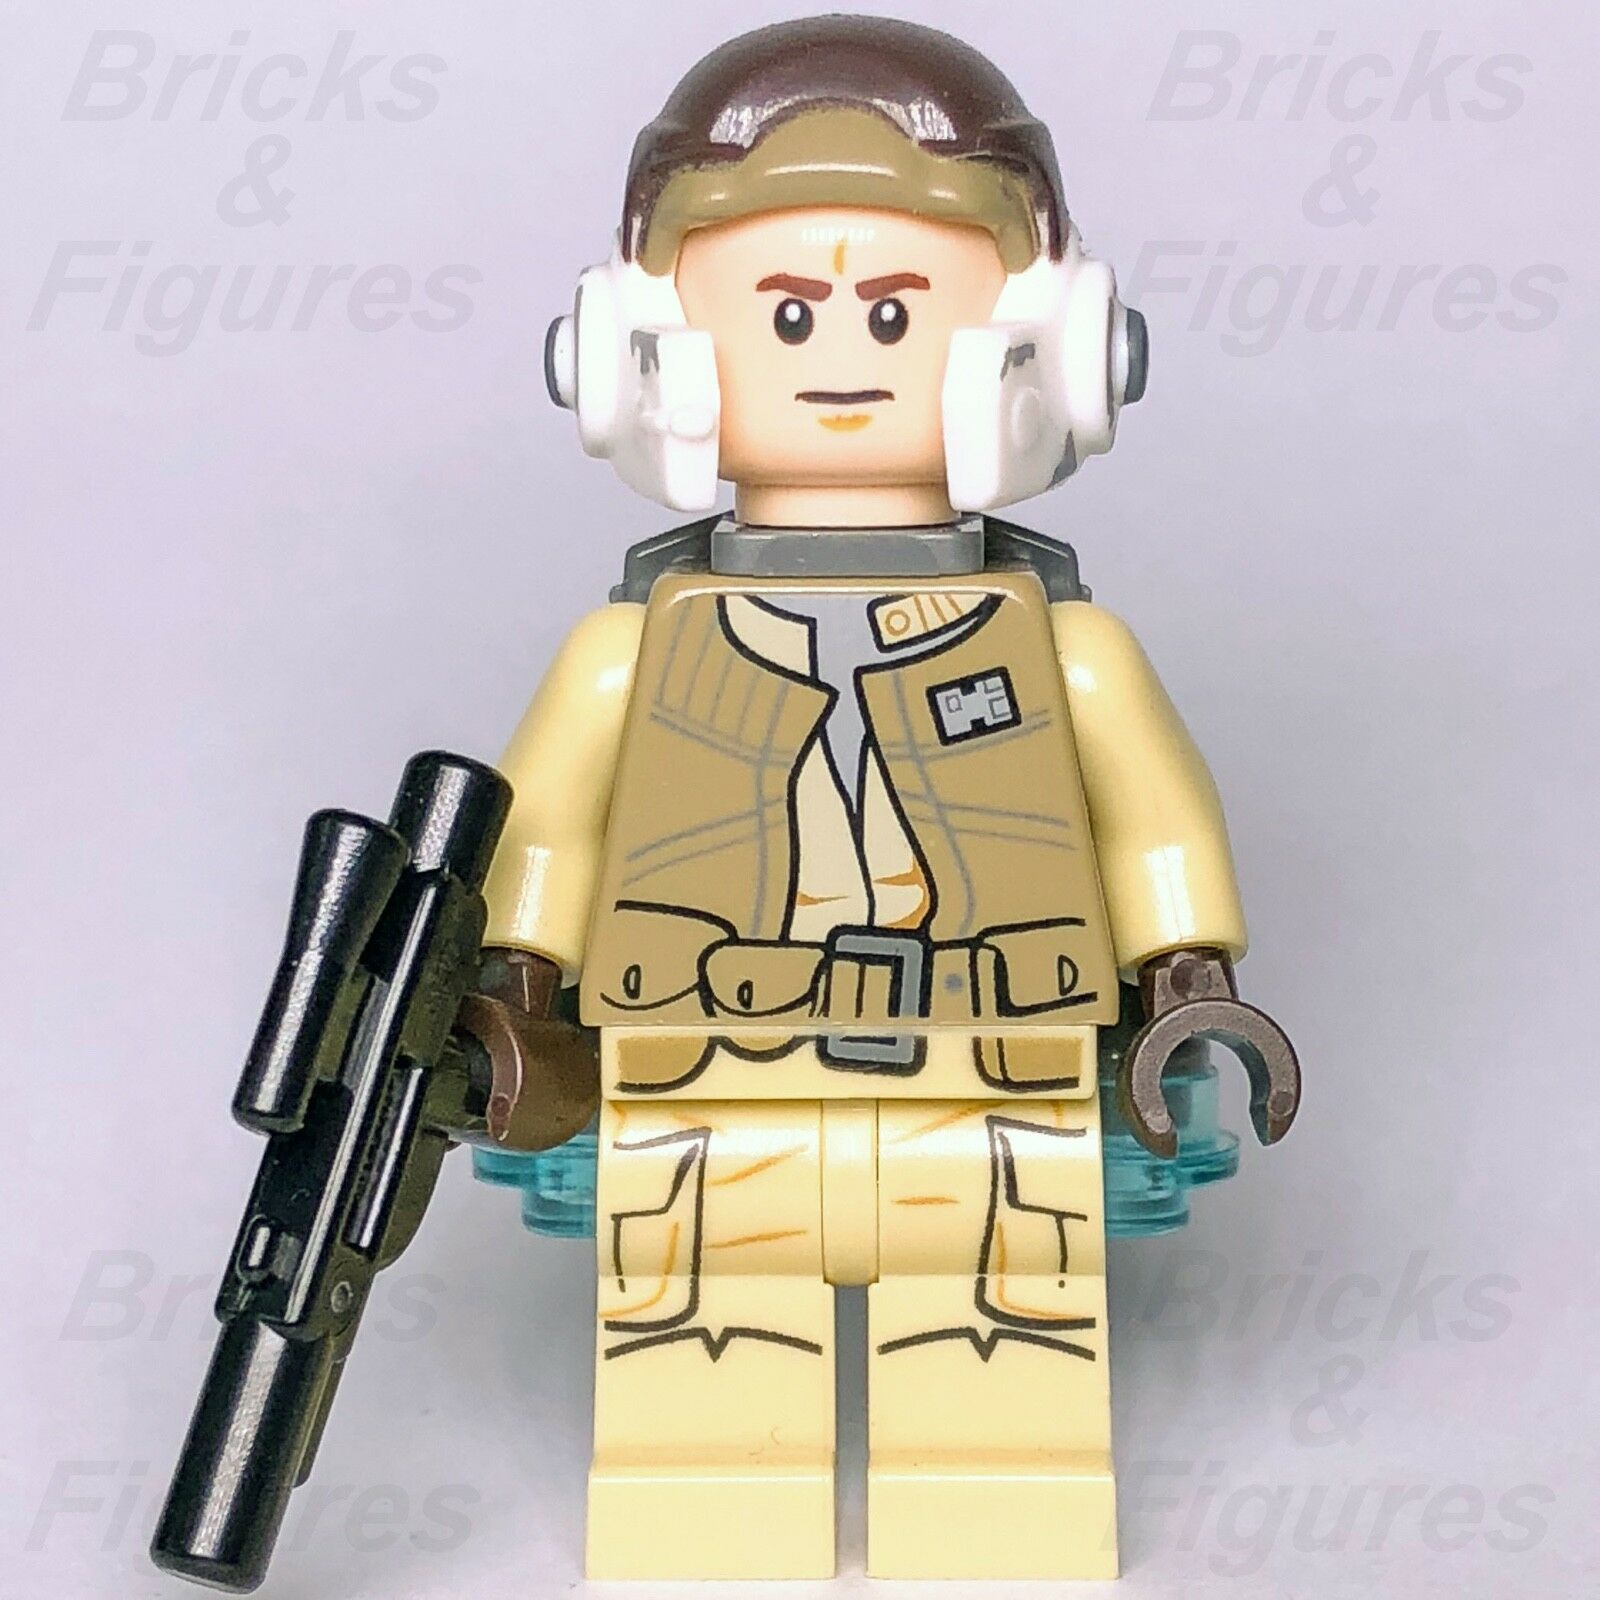 New Star Wars LEGO Rebel Jetpack Trooper Fighter Battlefront Minifigure 75133 - Bricks & Figures